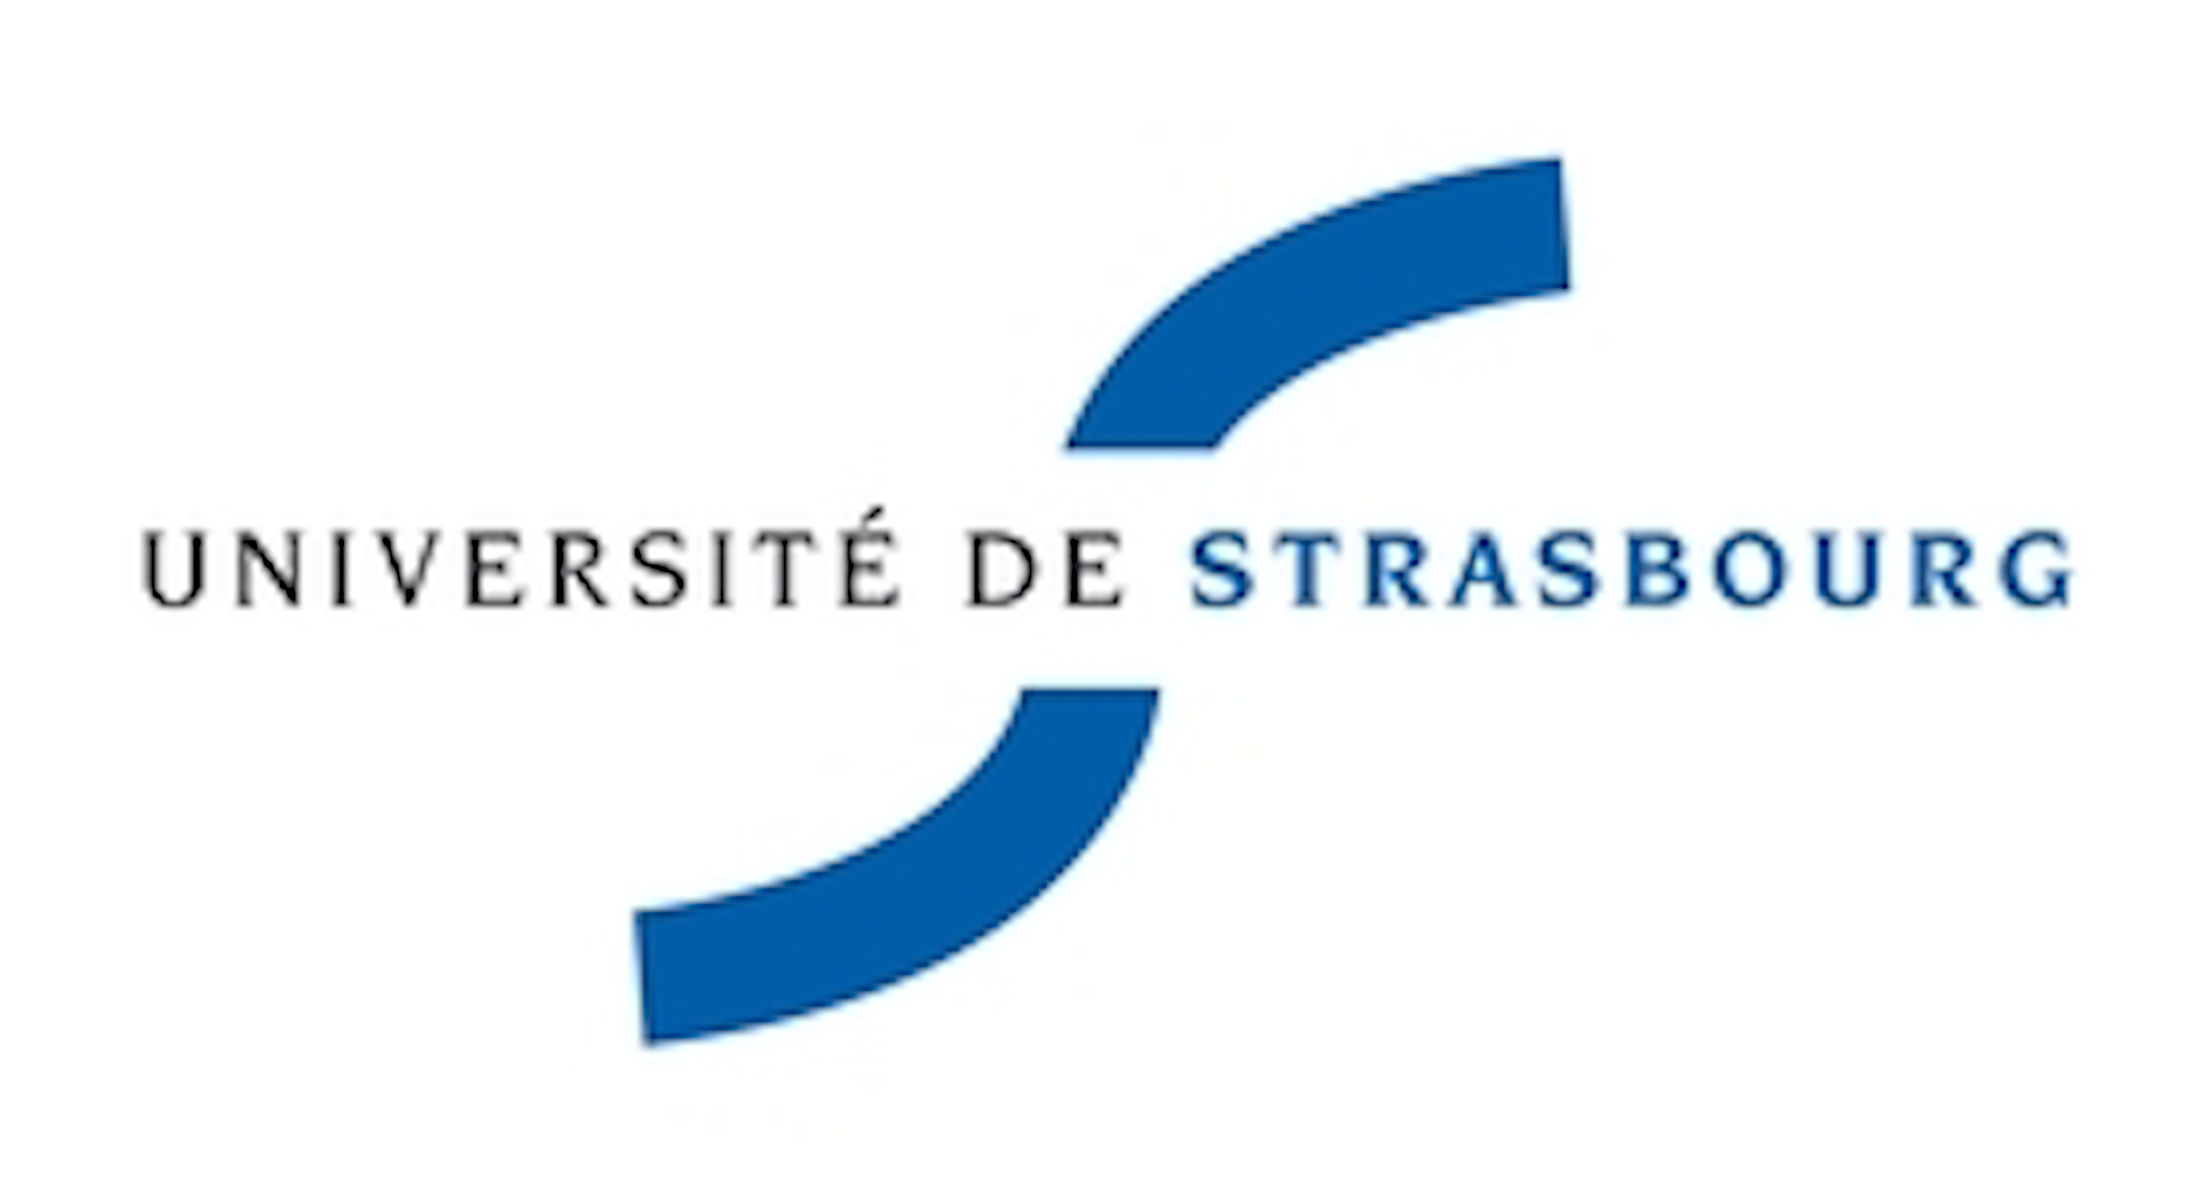 University of Strasbourg logo